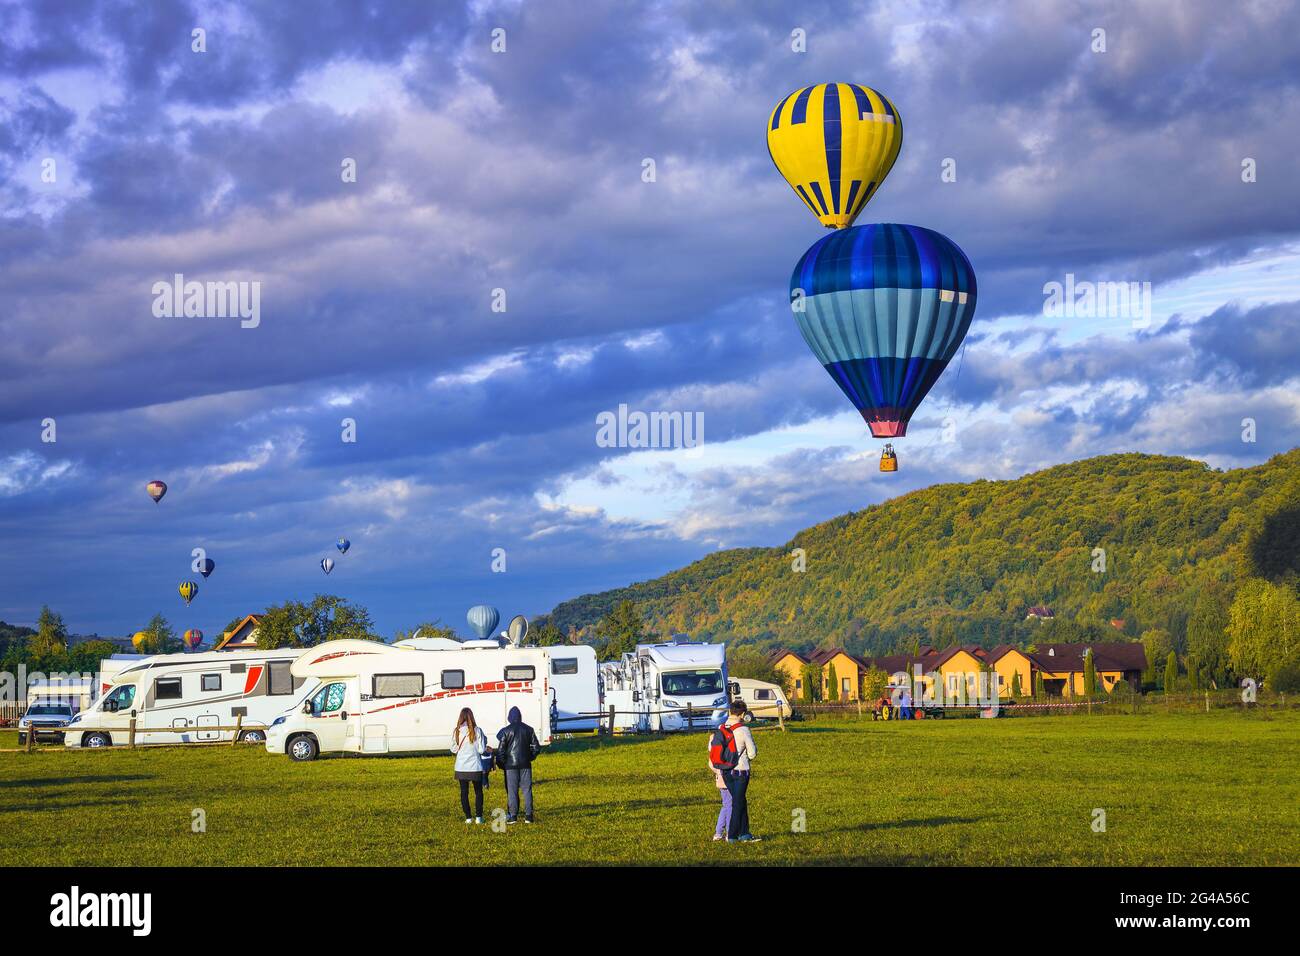 Spektakuläre bunte Heißluftballons bei Sonnenaufgang über dem Campingplatz. Erholungsfahrzeug rv Reise, Wohnwagen und Campingplatz, Familienurlaub und Outdoo Stockfoto